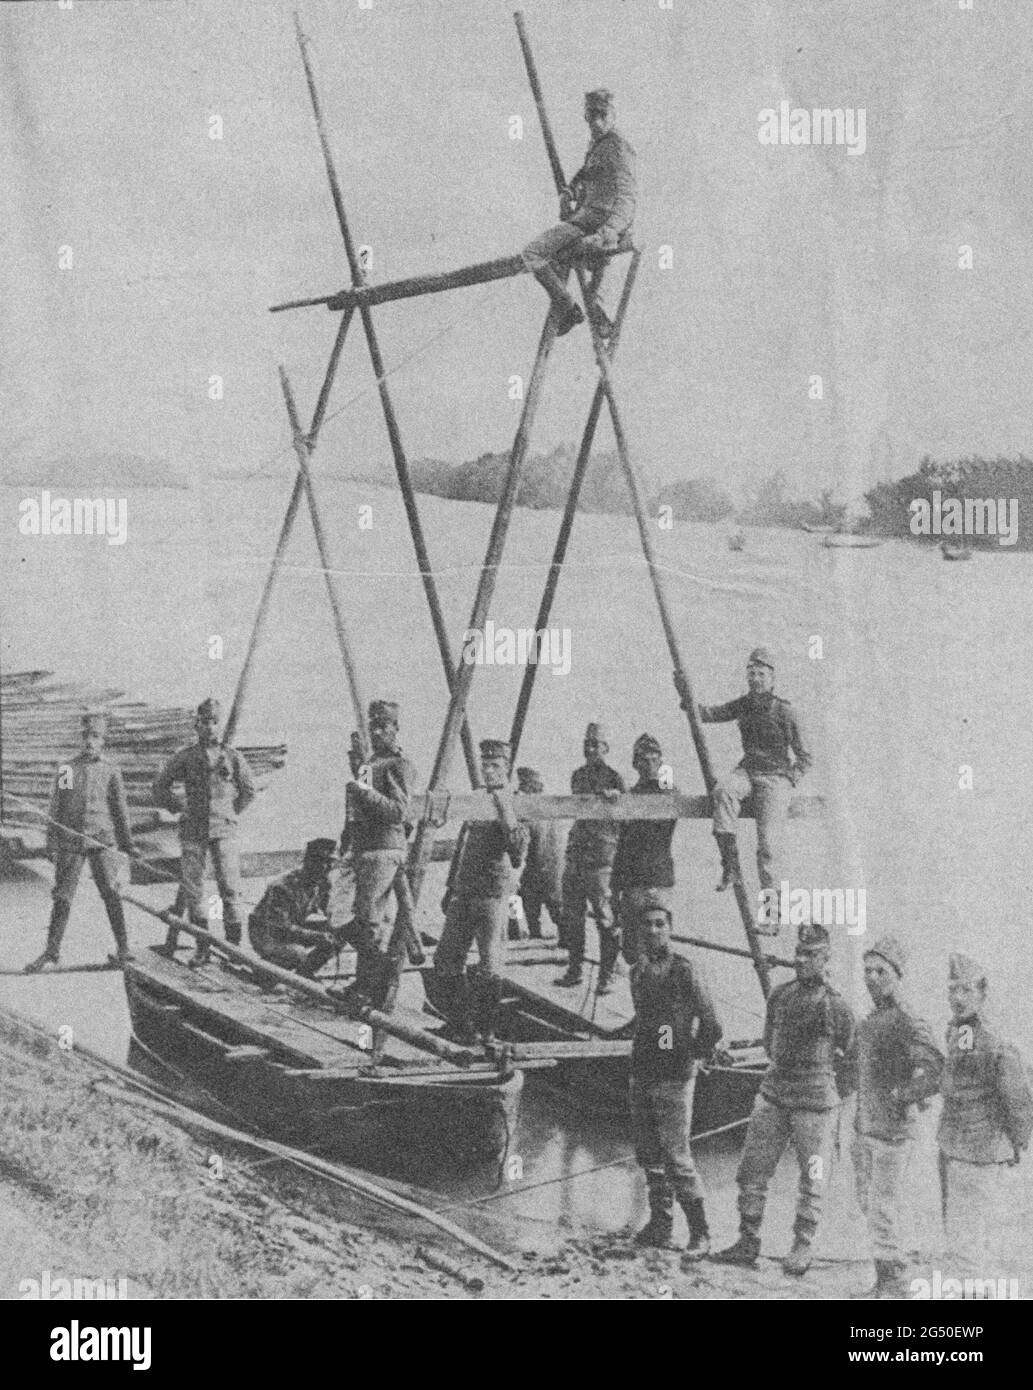 Foto d'epoca del periodo della prima guerra mondiale. Gli sapper austriaci costruiscono una traversata mobile sul Danubio. Impero austro-ungarico. 1914 Foto Stock